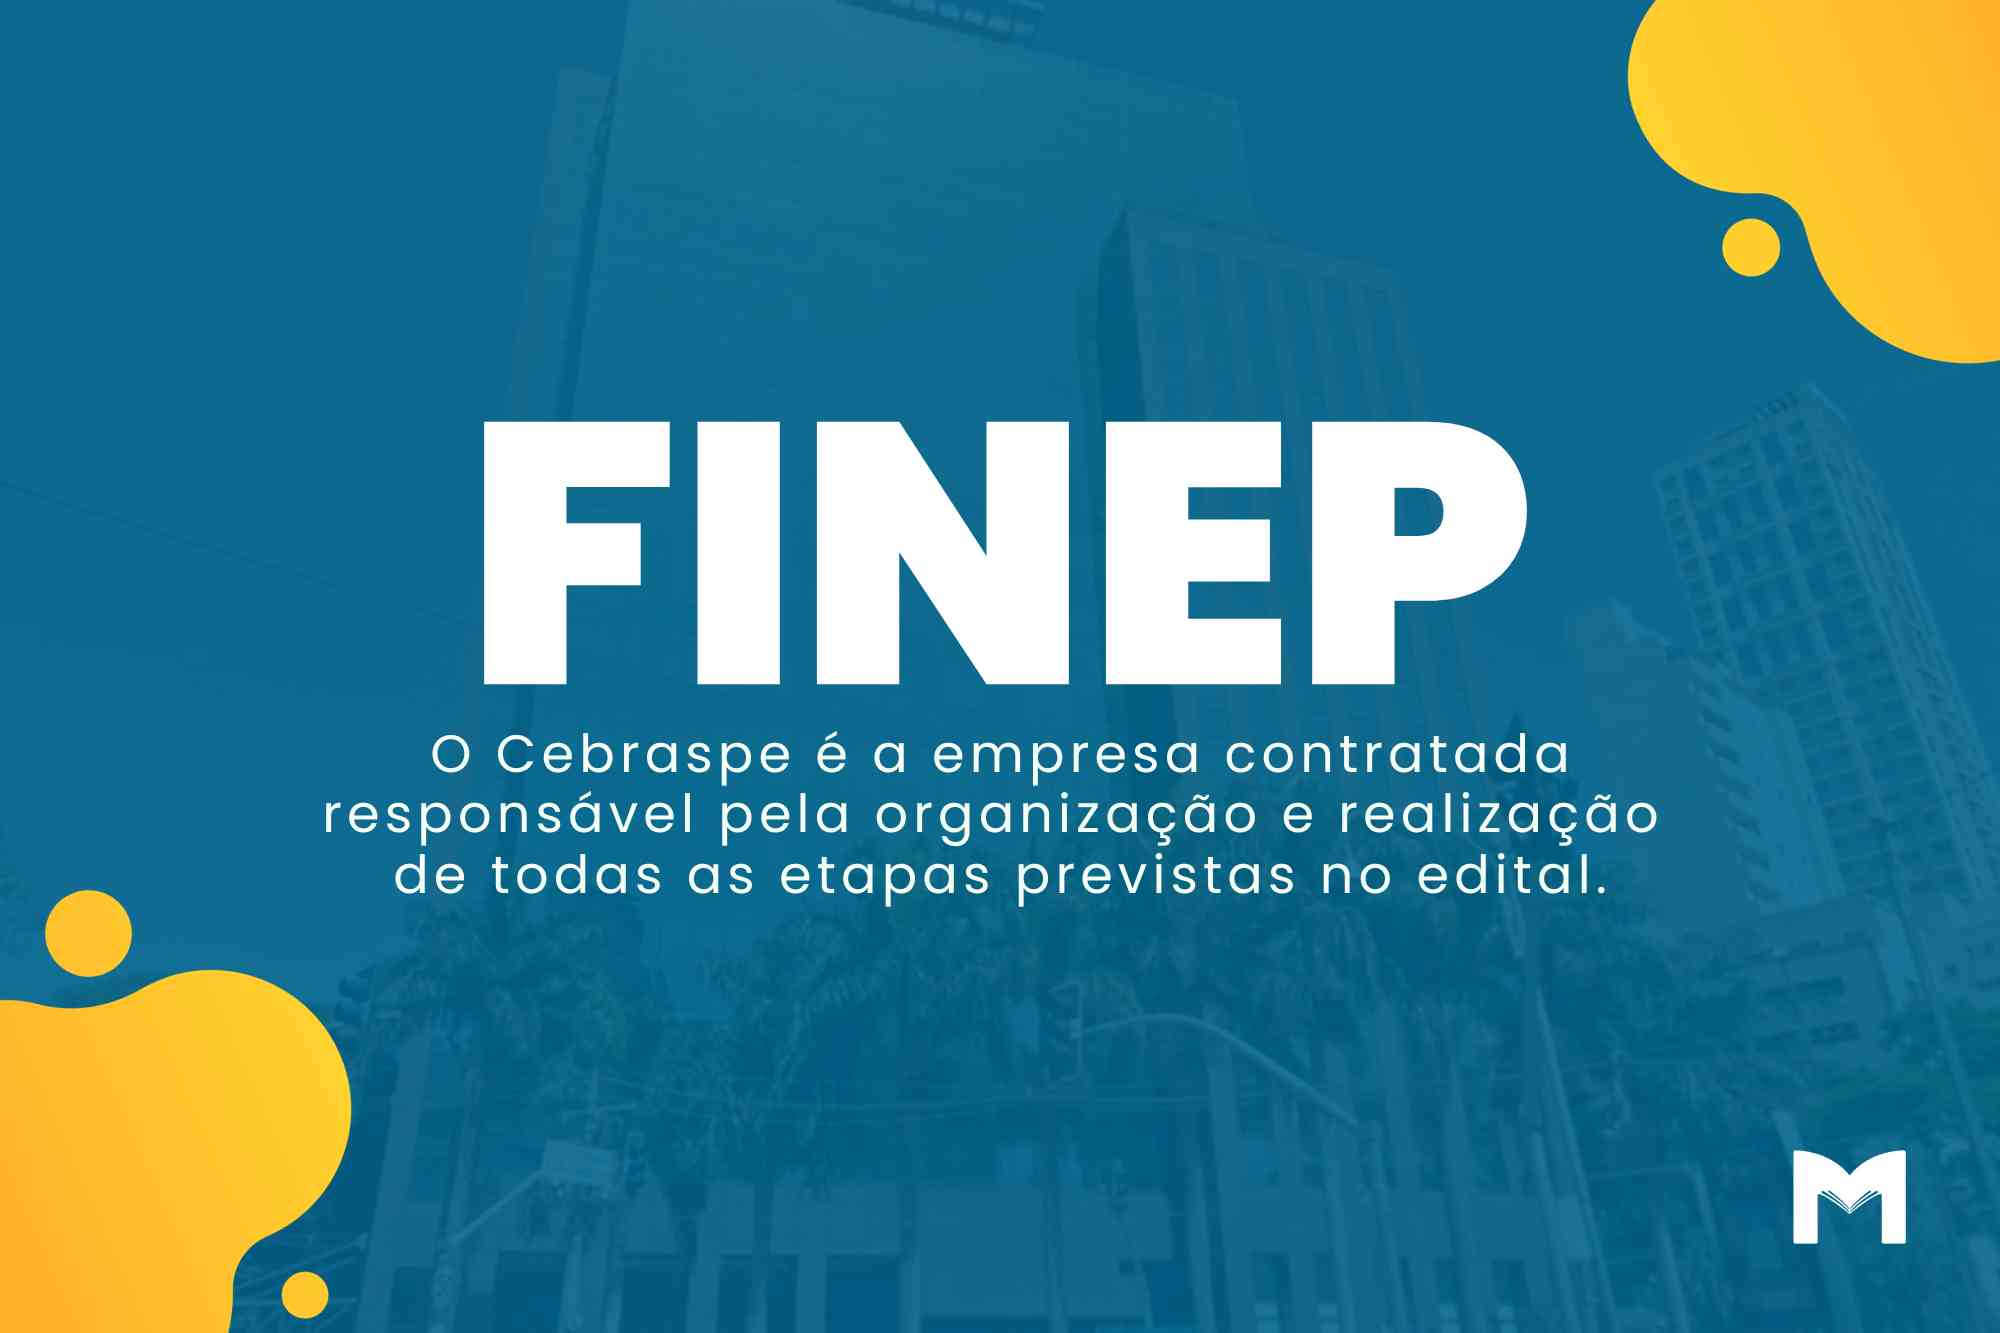 Concurso FINEP: Inscrições abertas para o cargo de Analista!